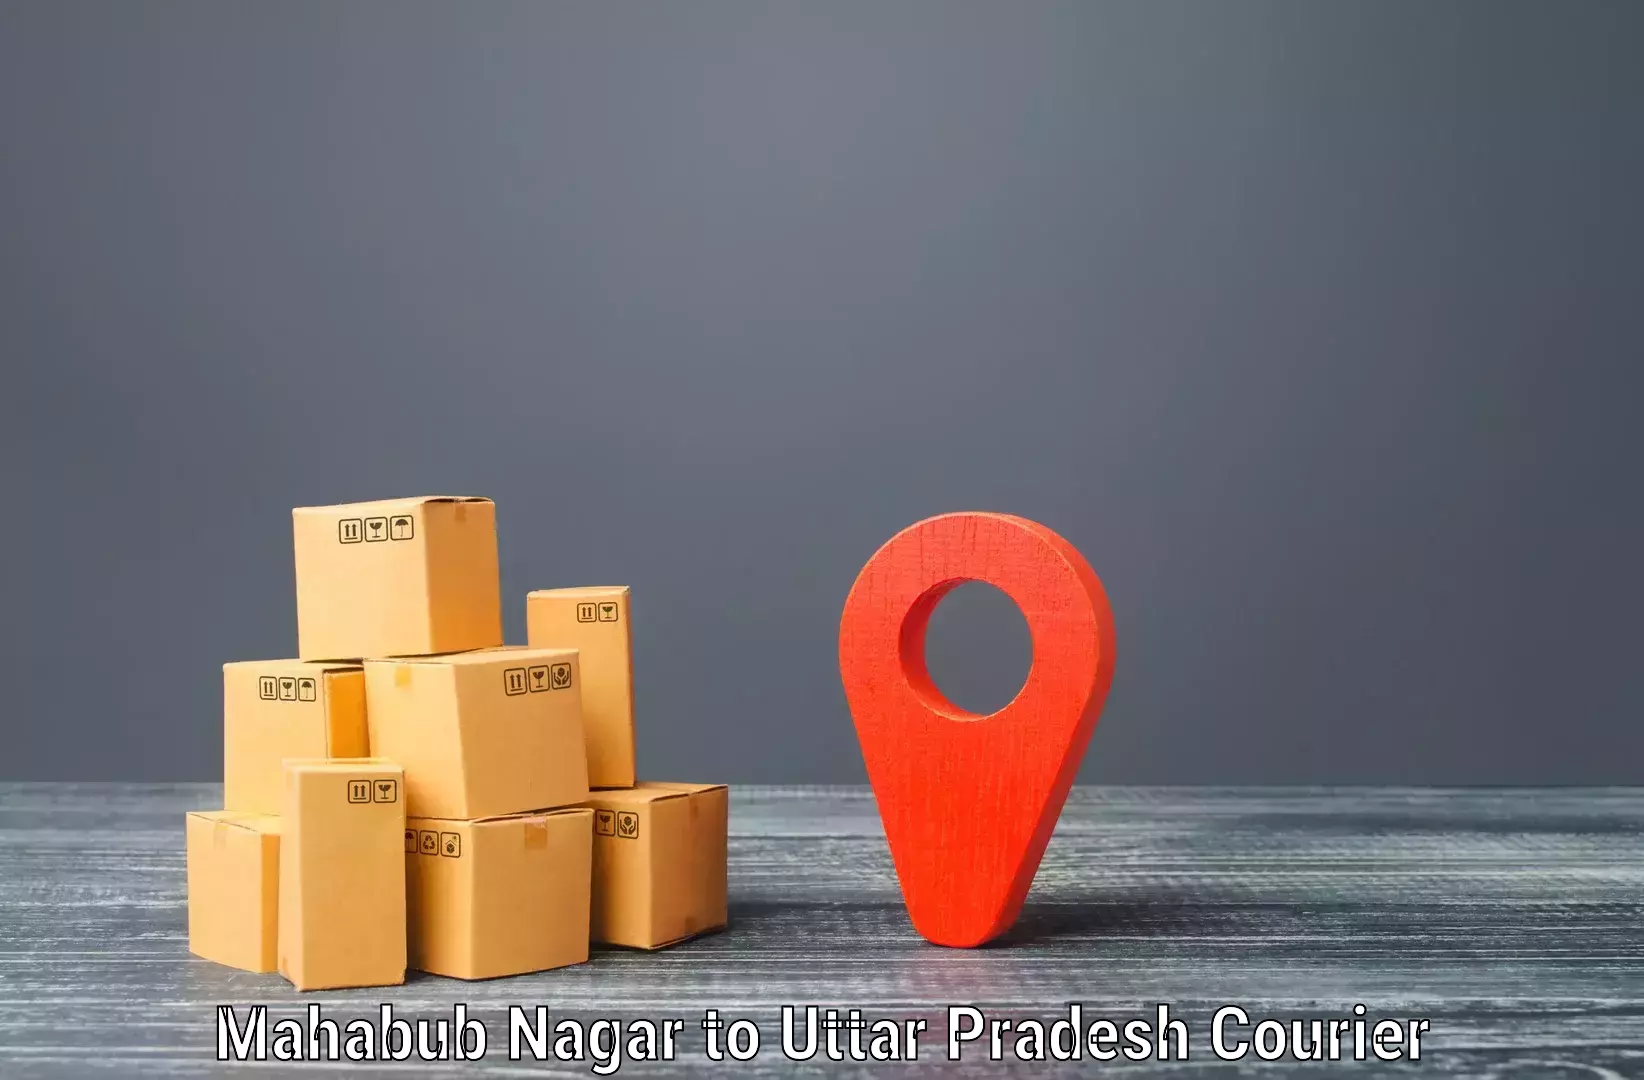 High-capacity courier solutions Mahabub Nagar to Gola